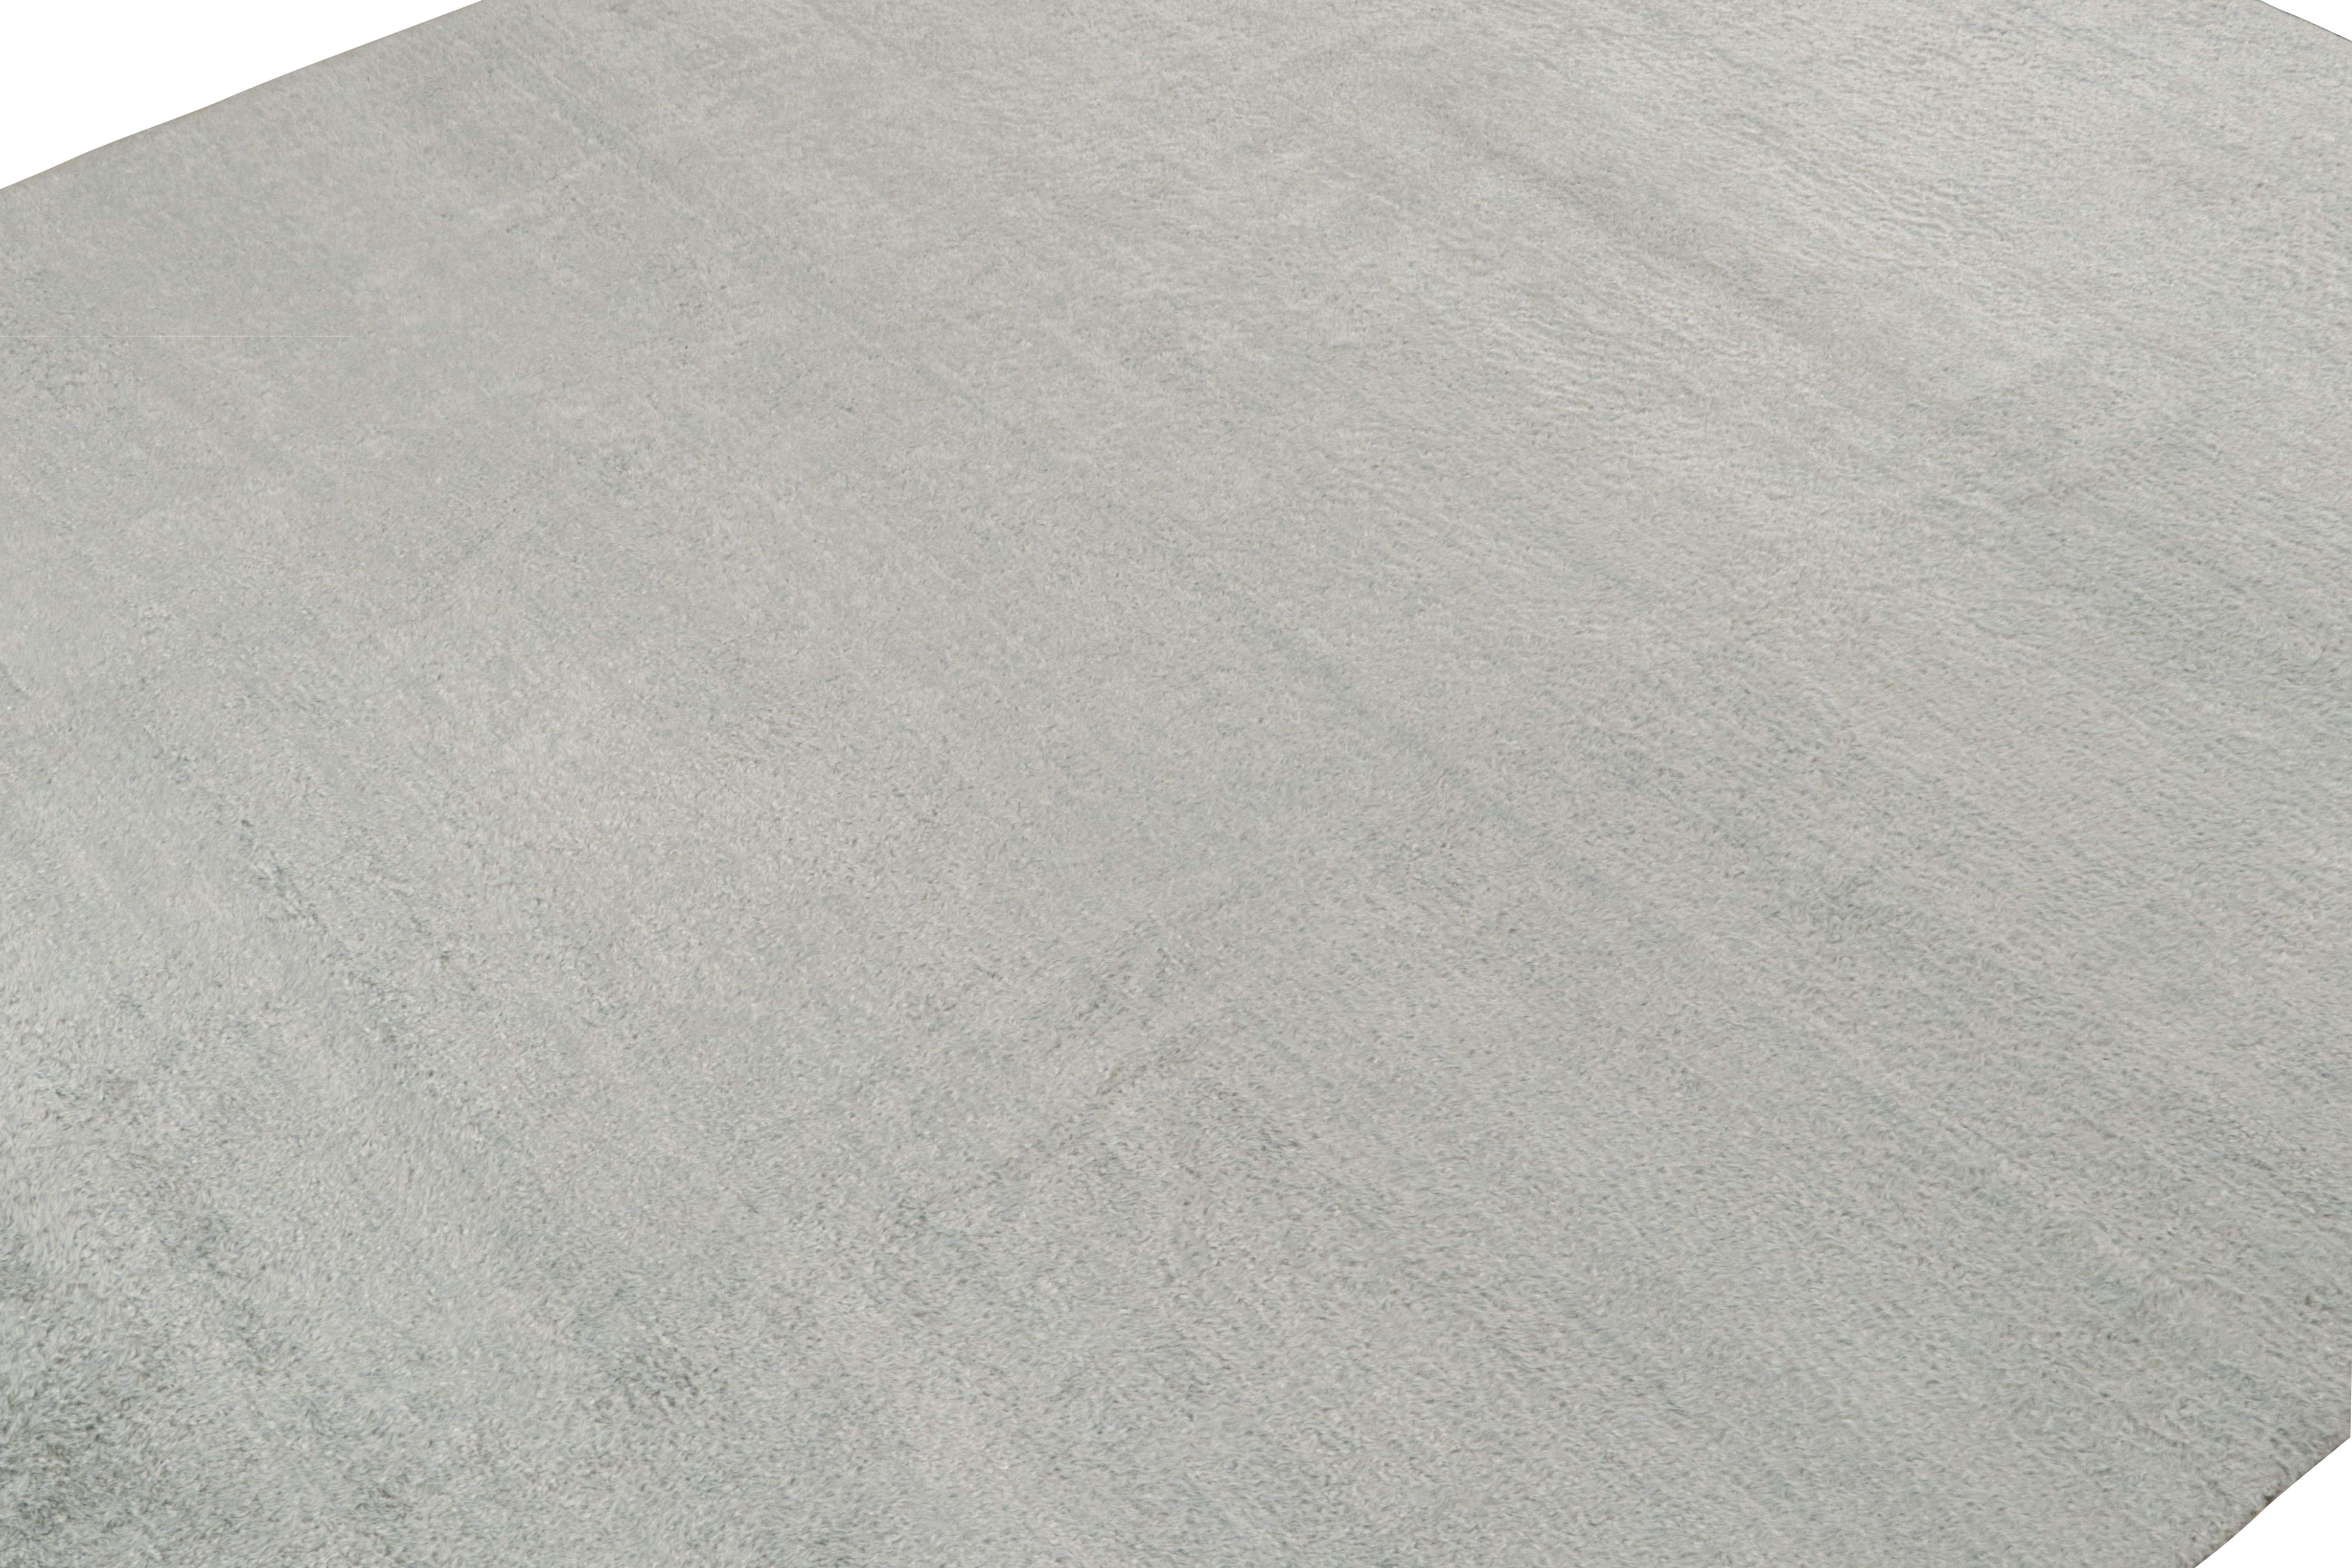 Dieses individuelle Teppichdesign ist eine neue Ergänzung der Texture of Collection'S von Rug & Kilim. Er ist handgeknüpft aus üppiger, hochfloriger Mohairwolle mit einem luxuriösen, natürlichen Glanz. 

Diese Bilder zeigen einen 10x10 Teppich in